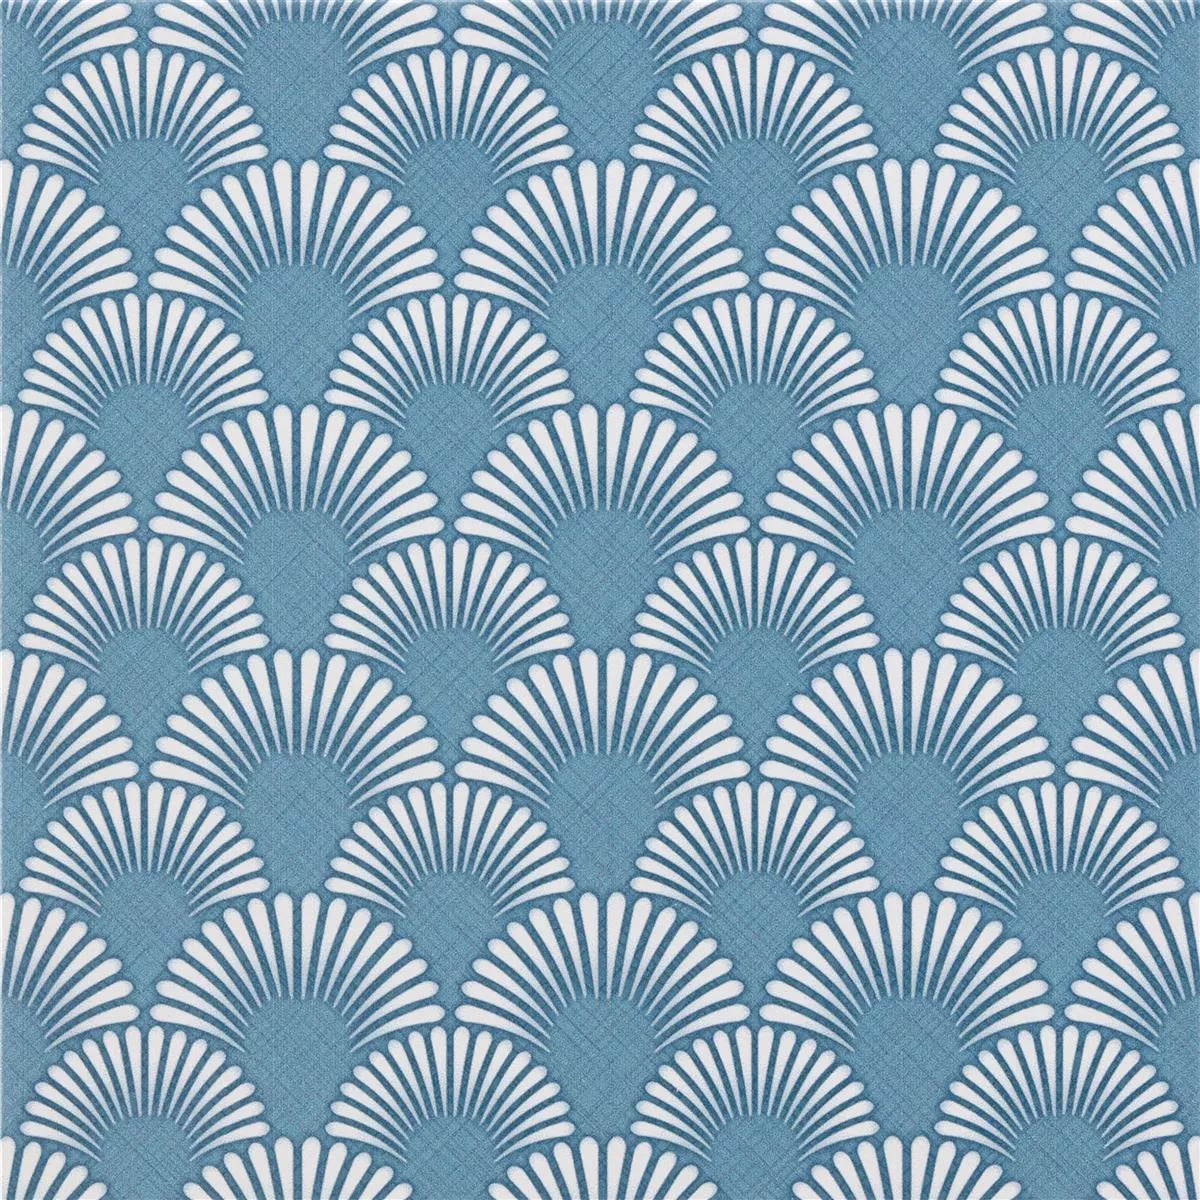 Πλακάκια Δαπέδου Εμφάνιση Tσιμέντου Wildflower Μπλε Ντεκόρ 18,5x18,5cm